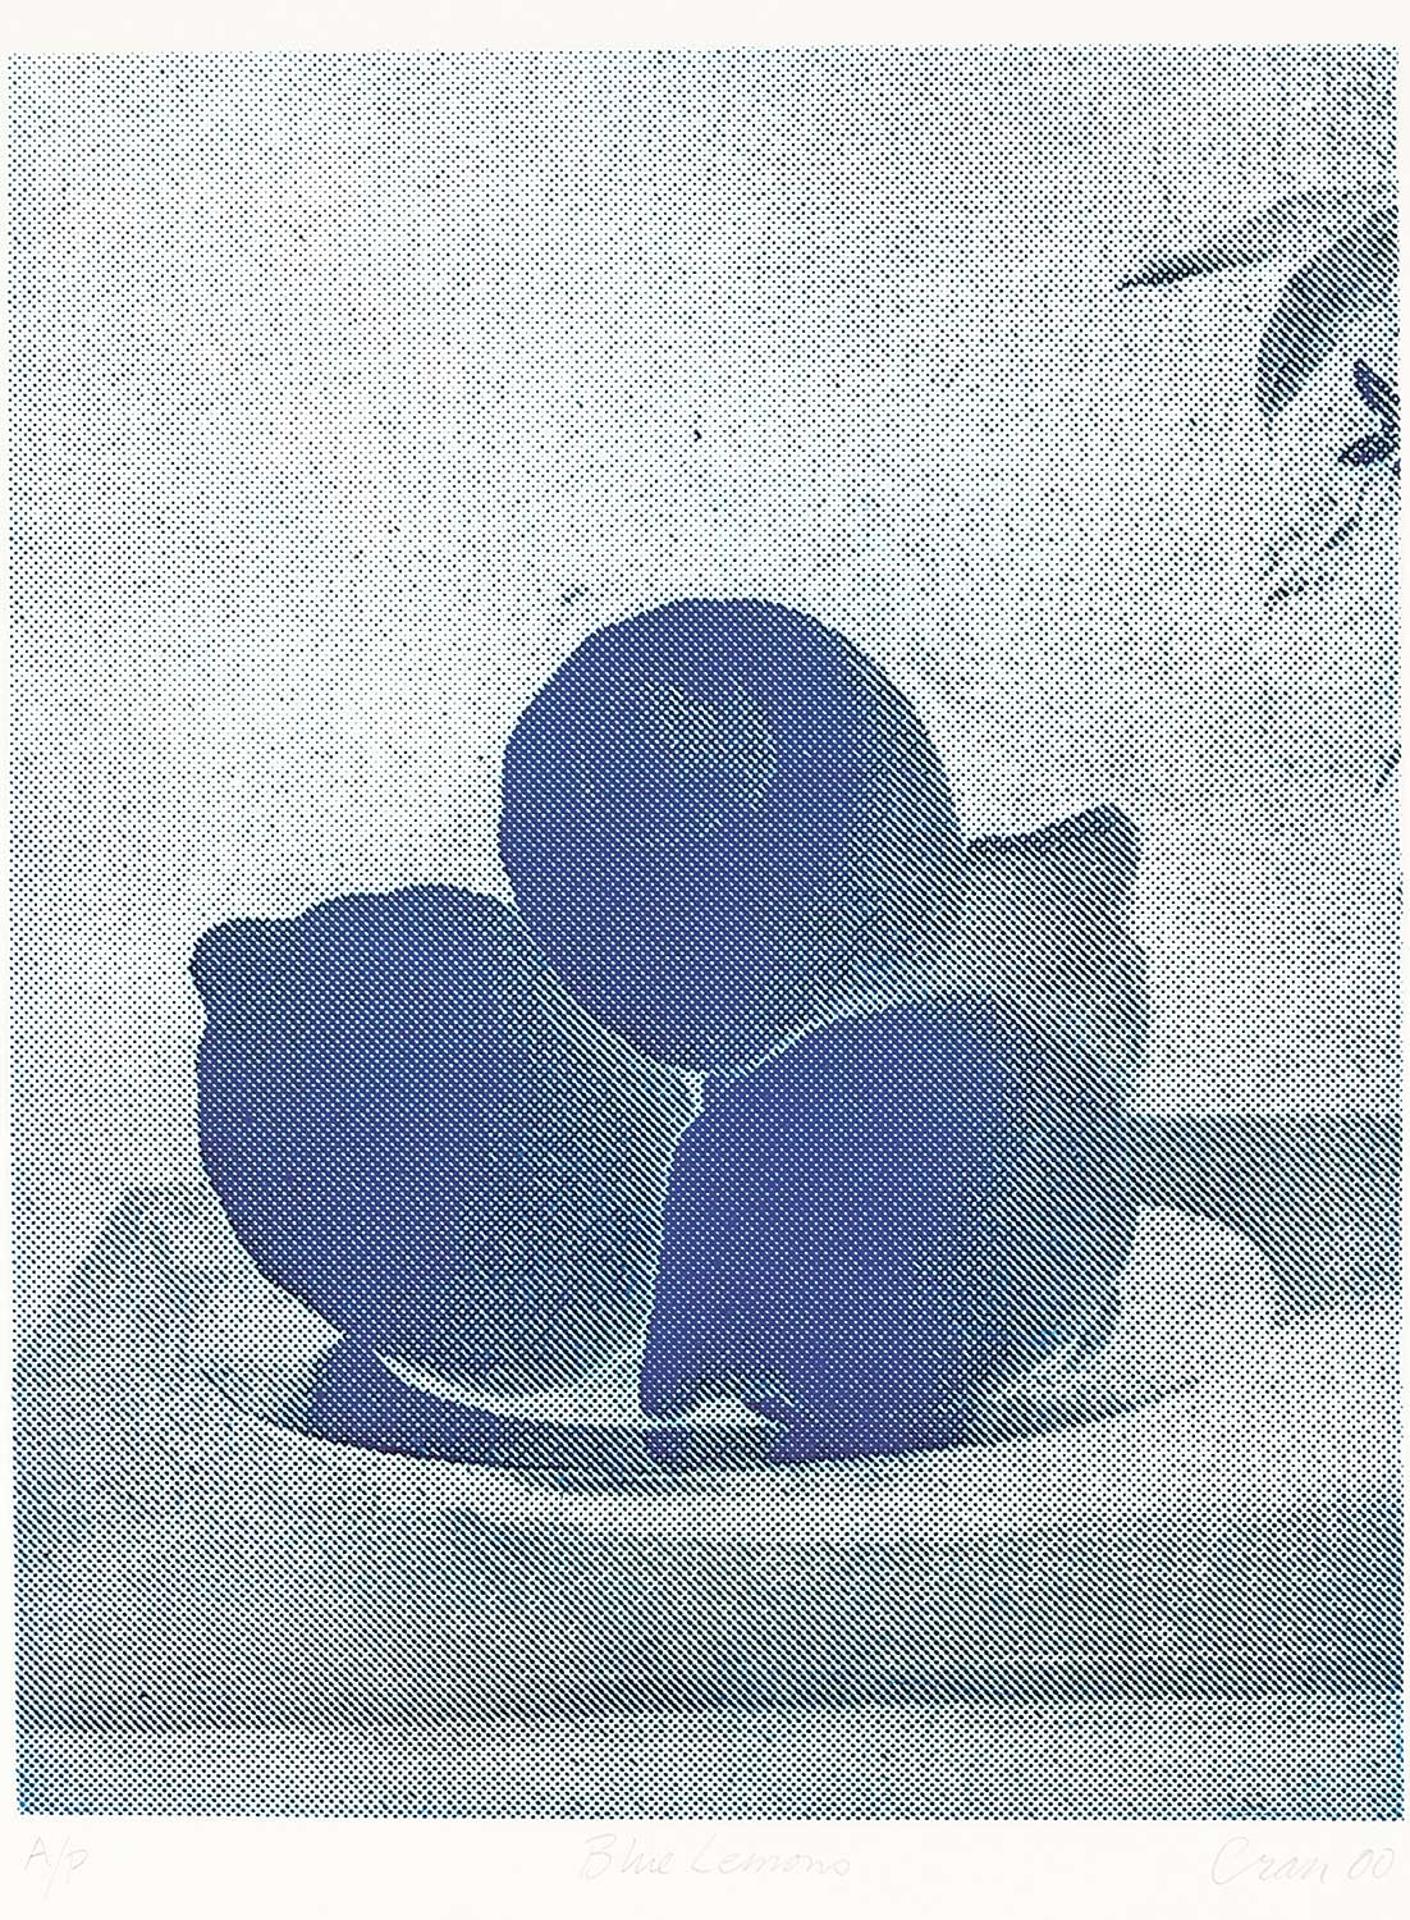 Christopher Cran (1949) - Blue Lemons  #A/P